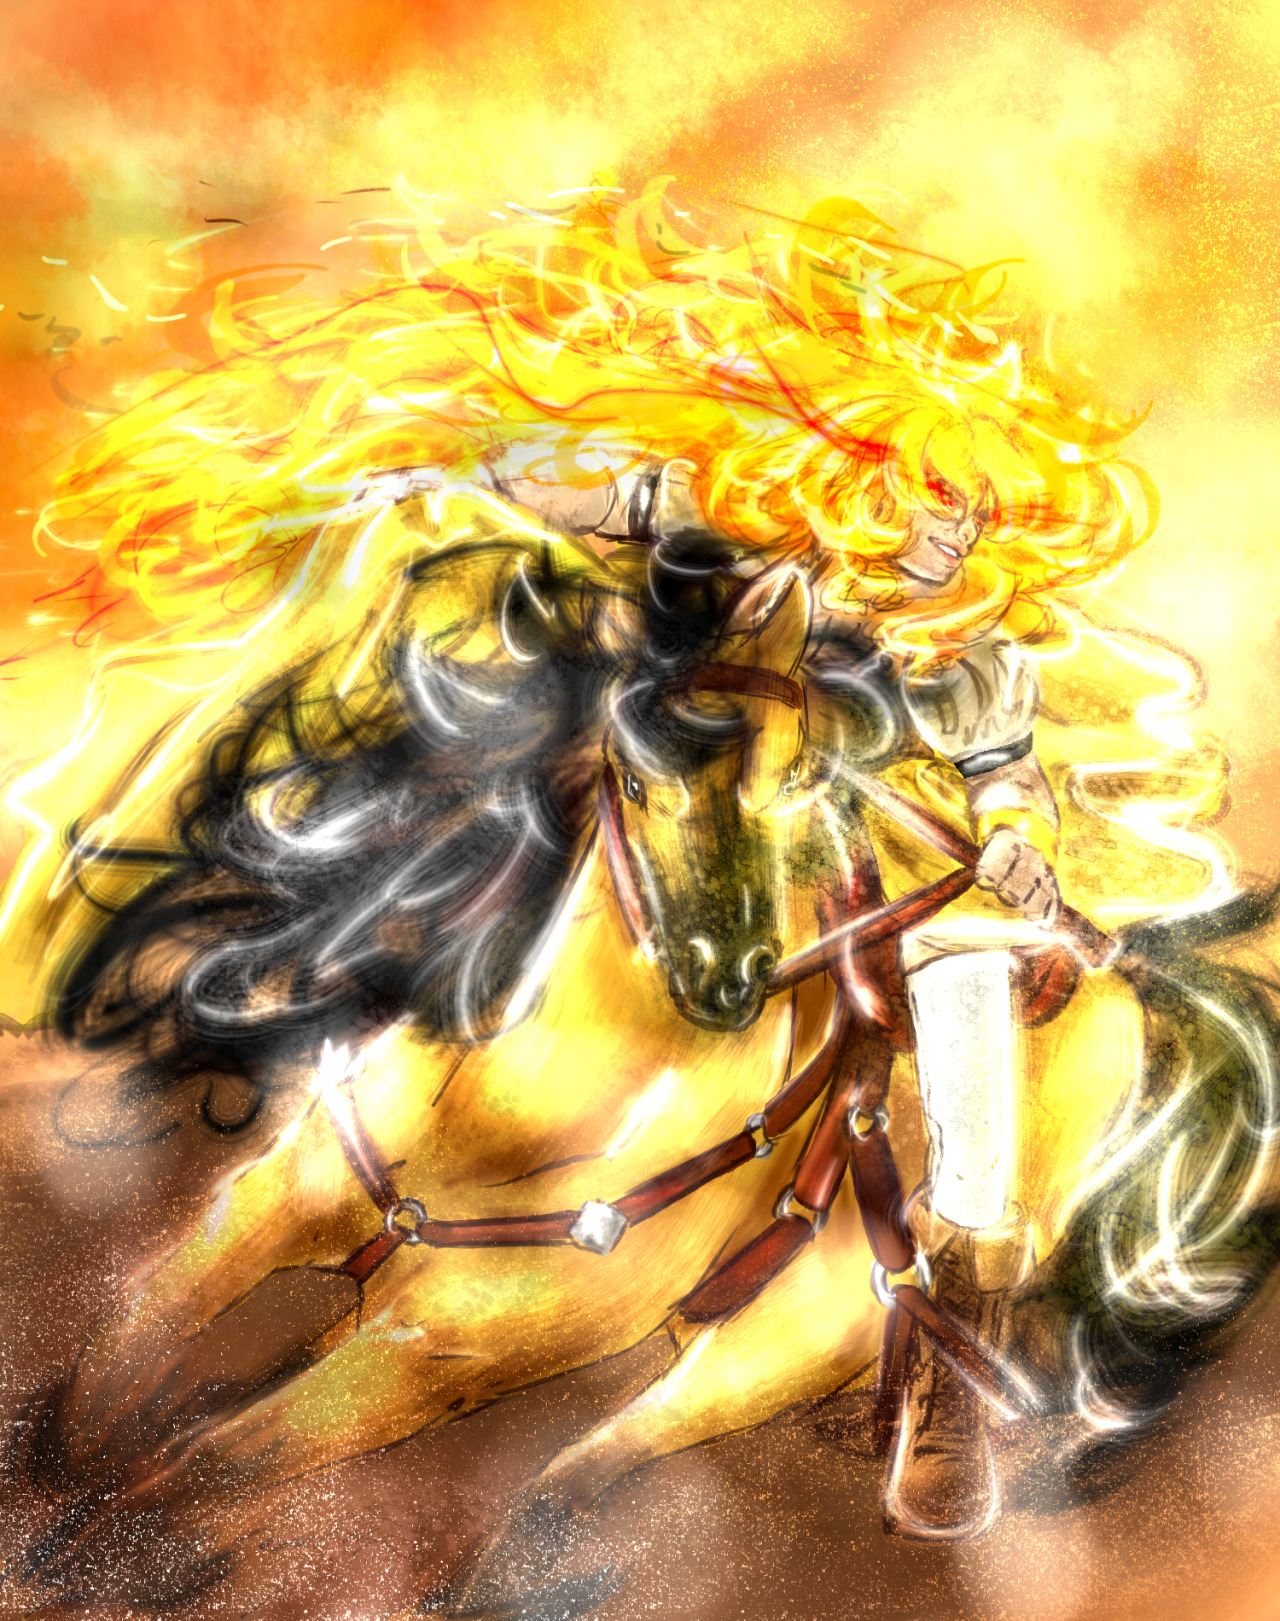 Yang riding into battle scene from hanasaku-shijin&rsquo;s epic fanfic Eternal